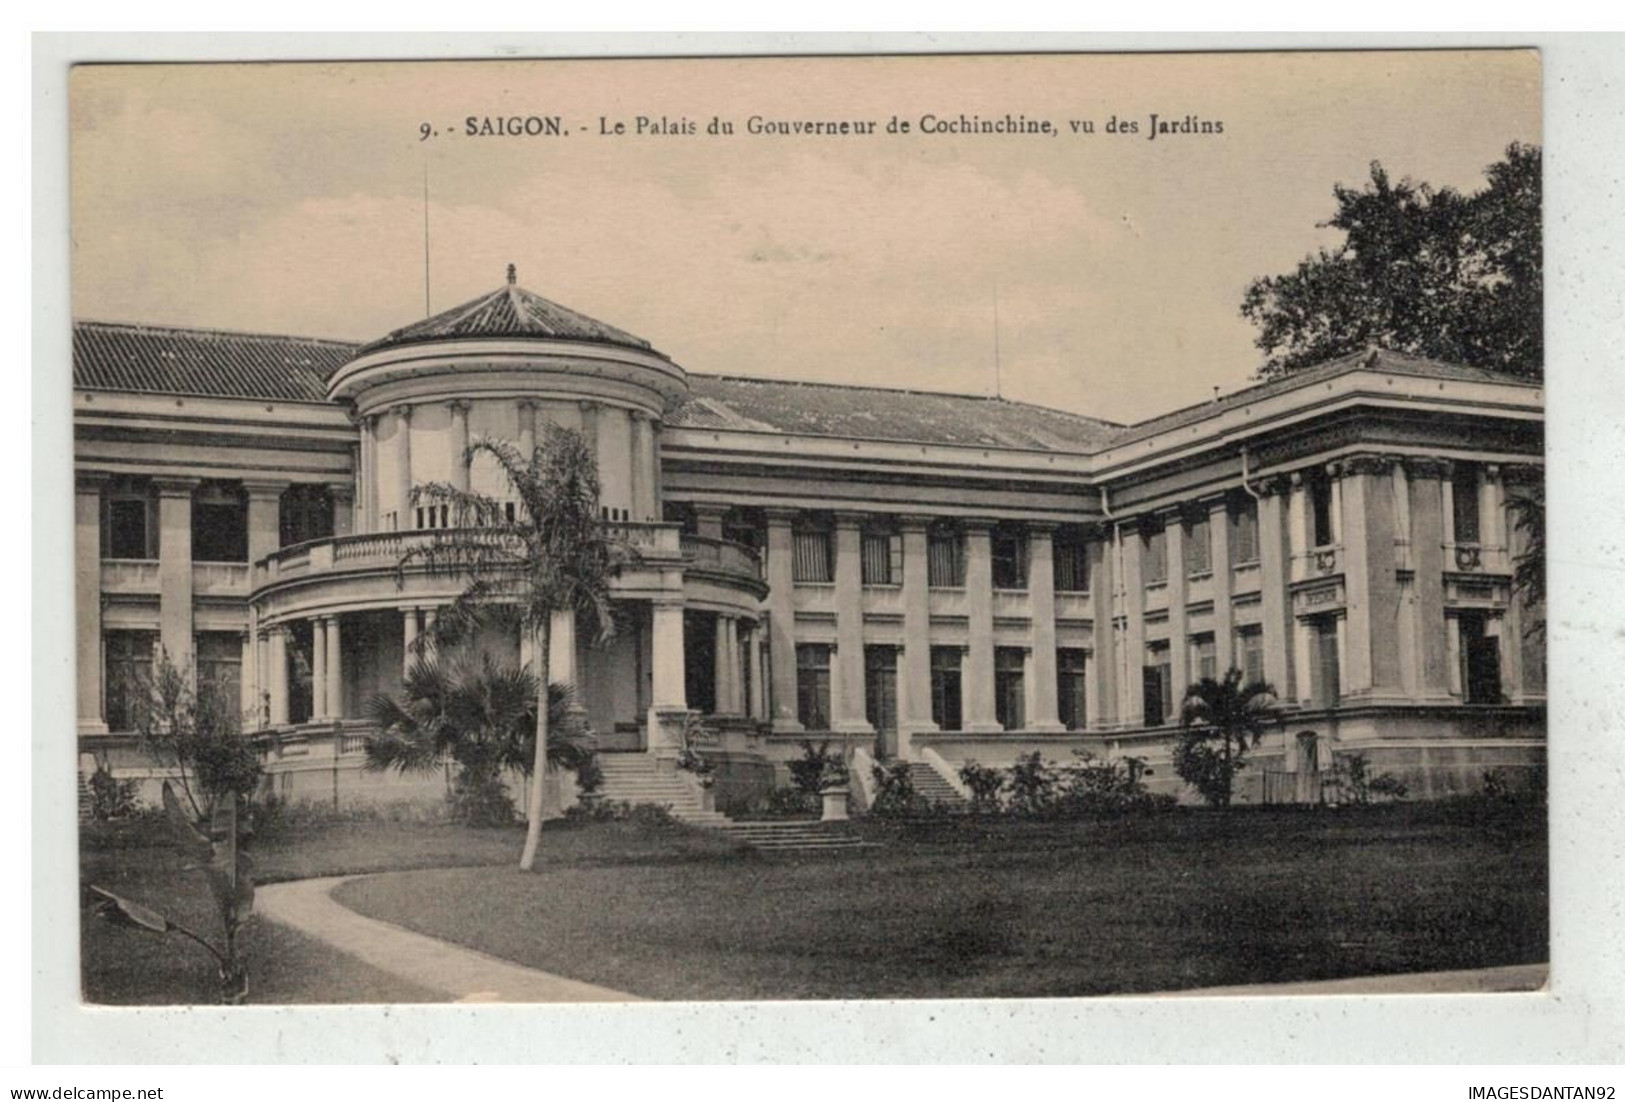 TONKIN INDOCHINE VIETNAM SAIGON #18568 PALAIS DU GOUVERNEUR DE COCHINCHINE - Viêt-Nam